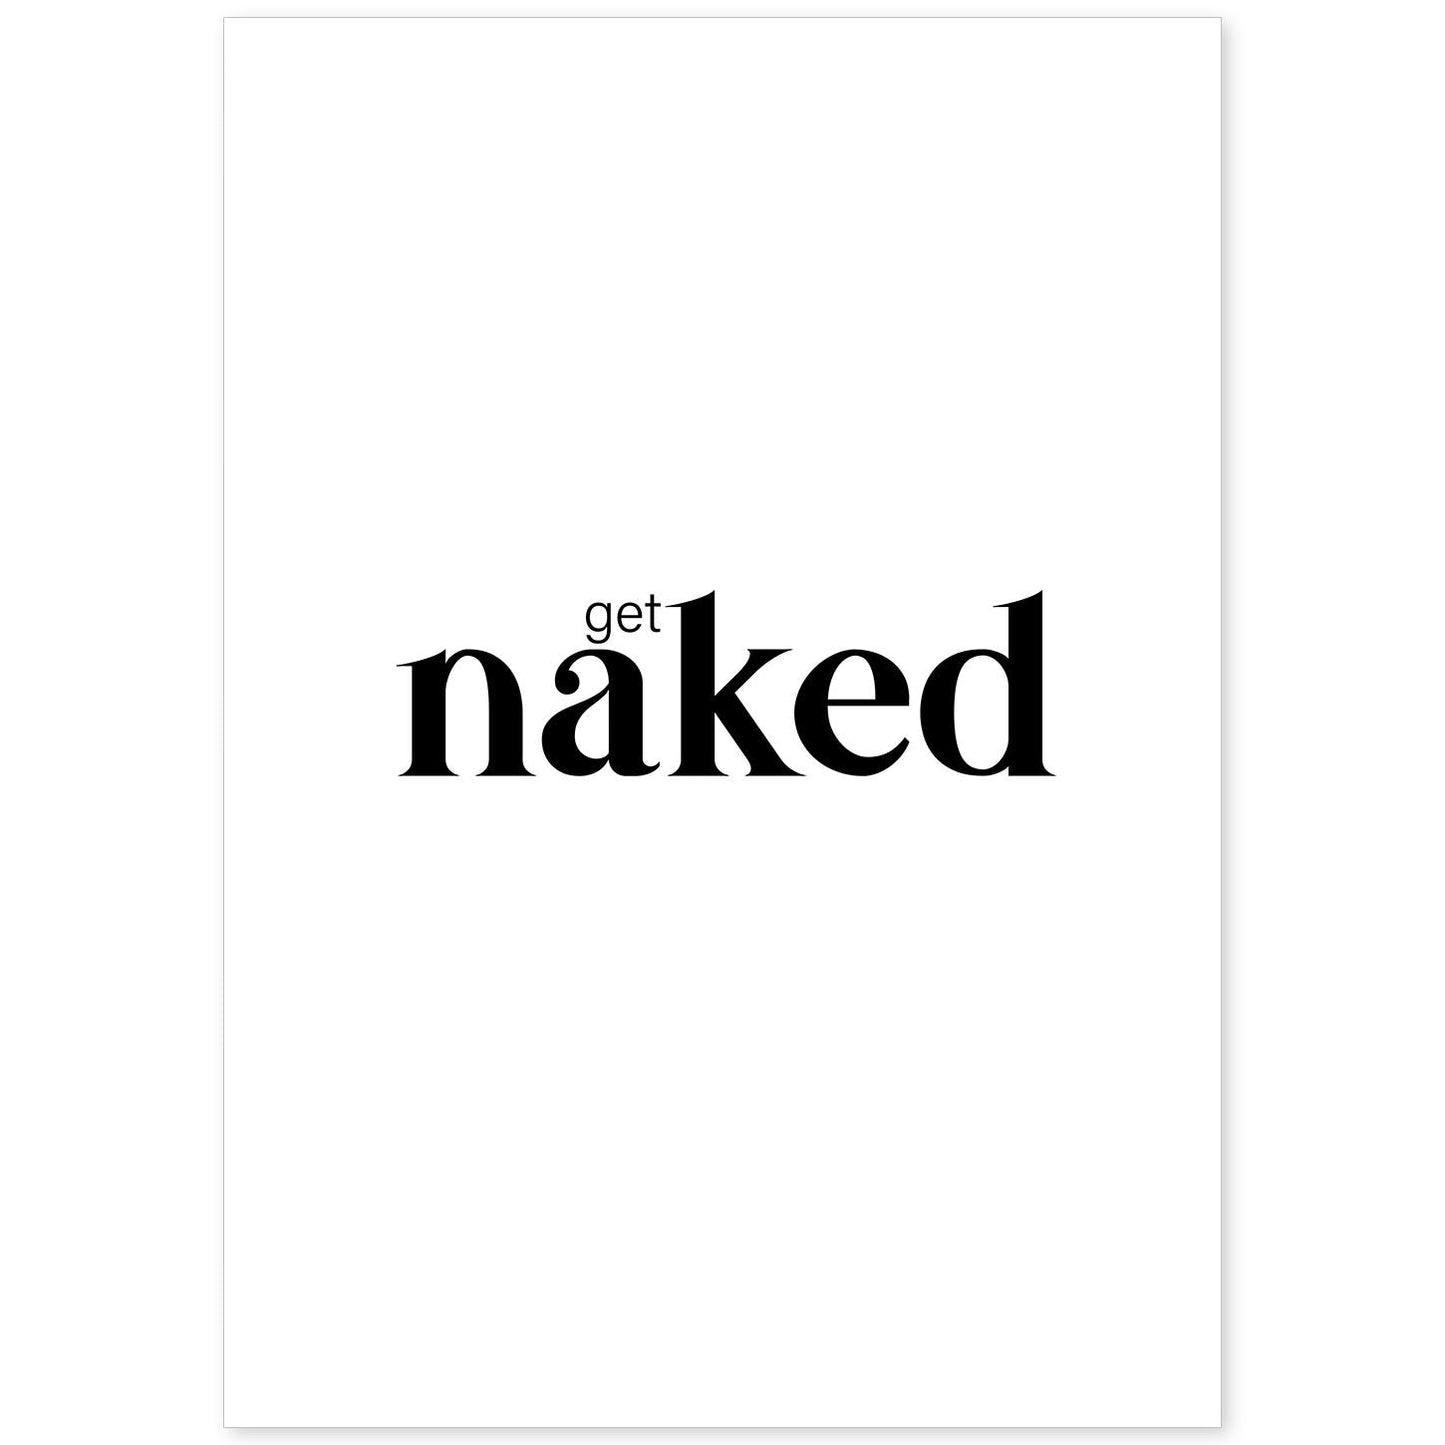 Lamina artistica decorativa con ilustración de get naked estilo Mensaje inspiracional-Artwork-Nacnic-A4-Sin marco-Nacnic Estudio SL